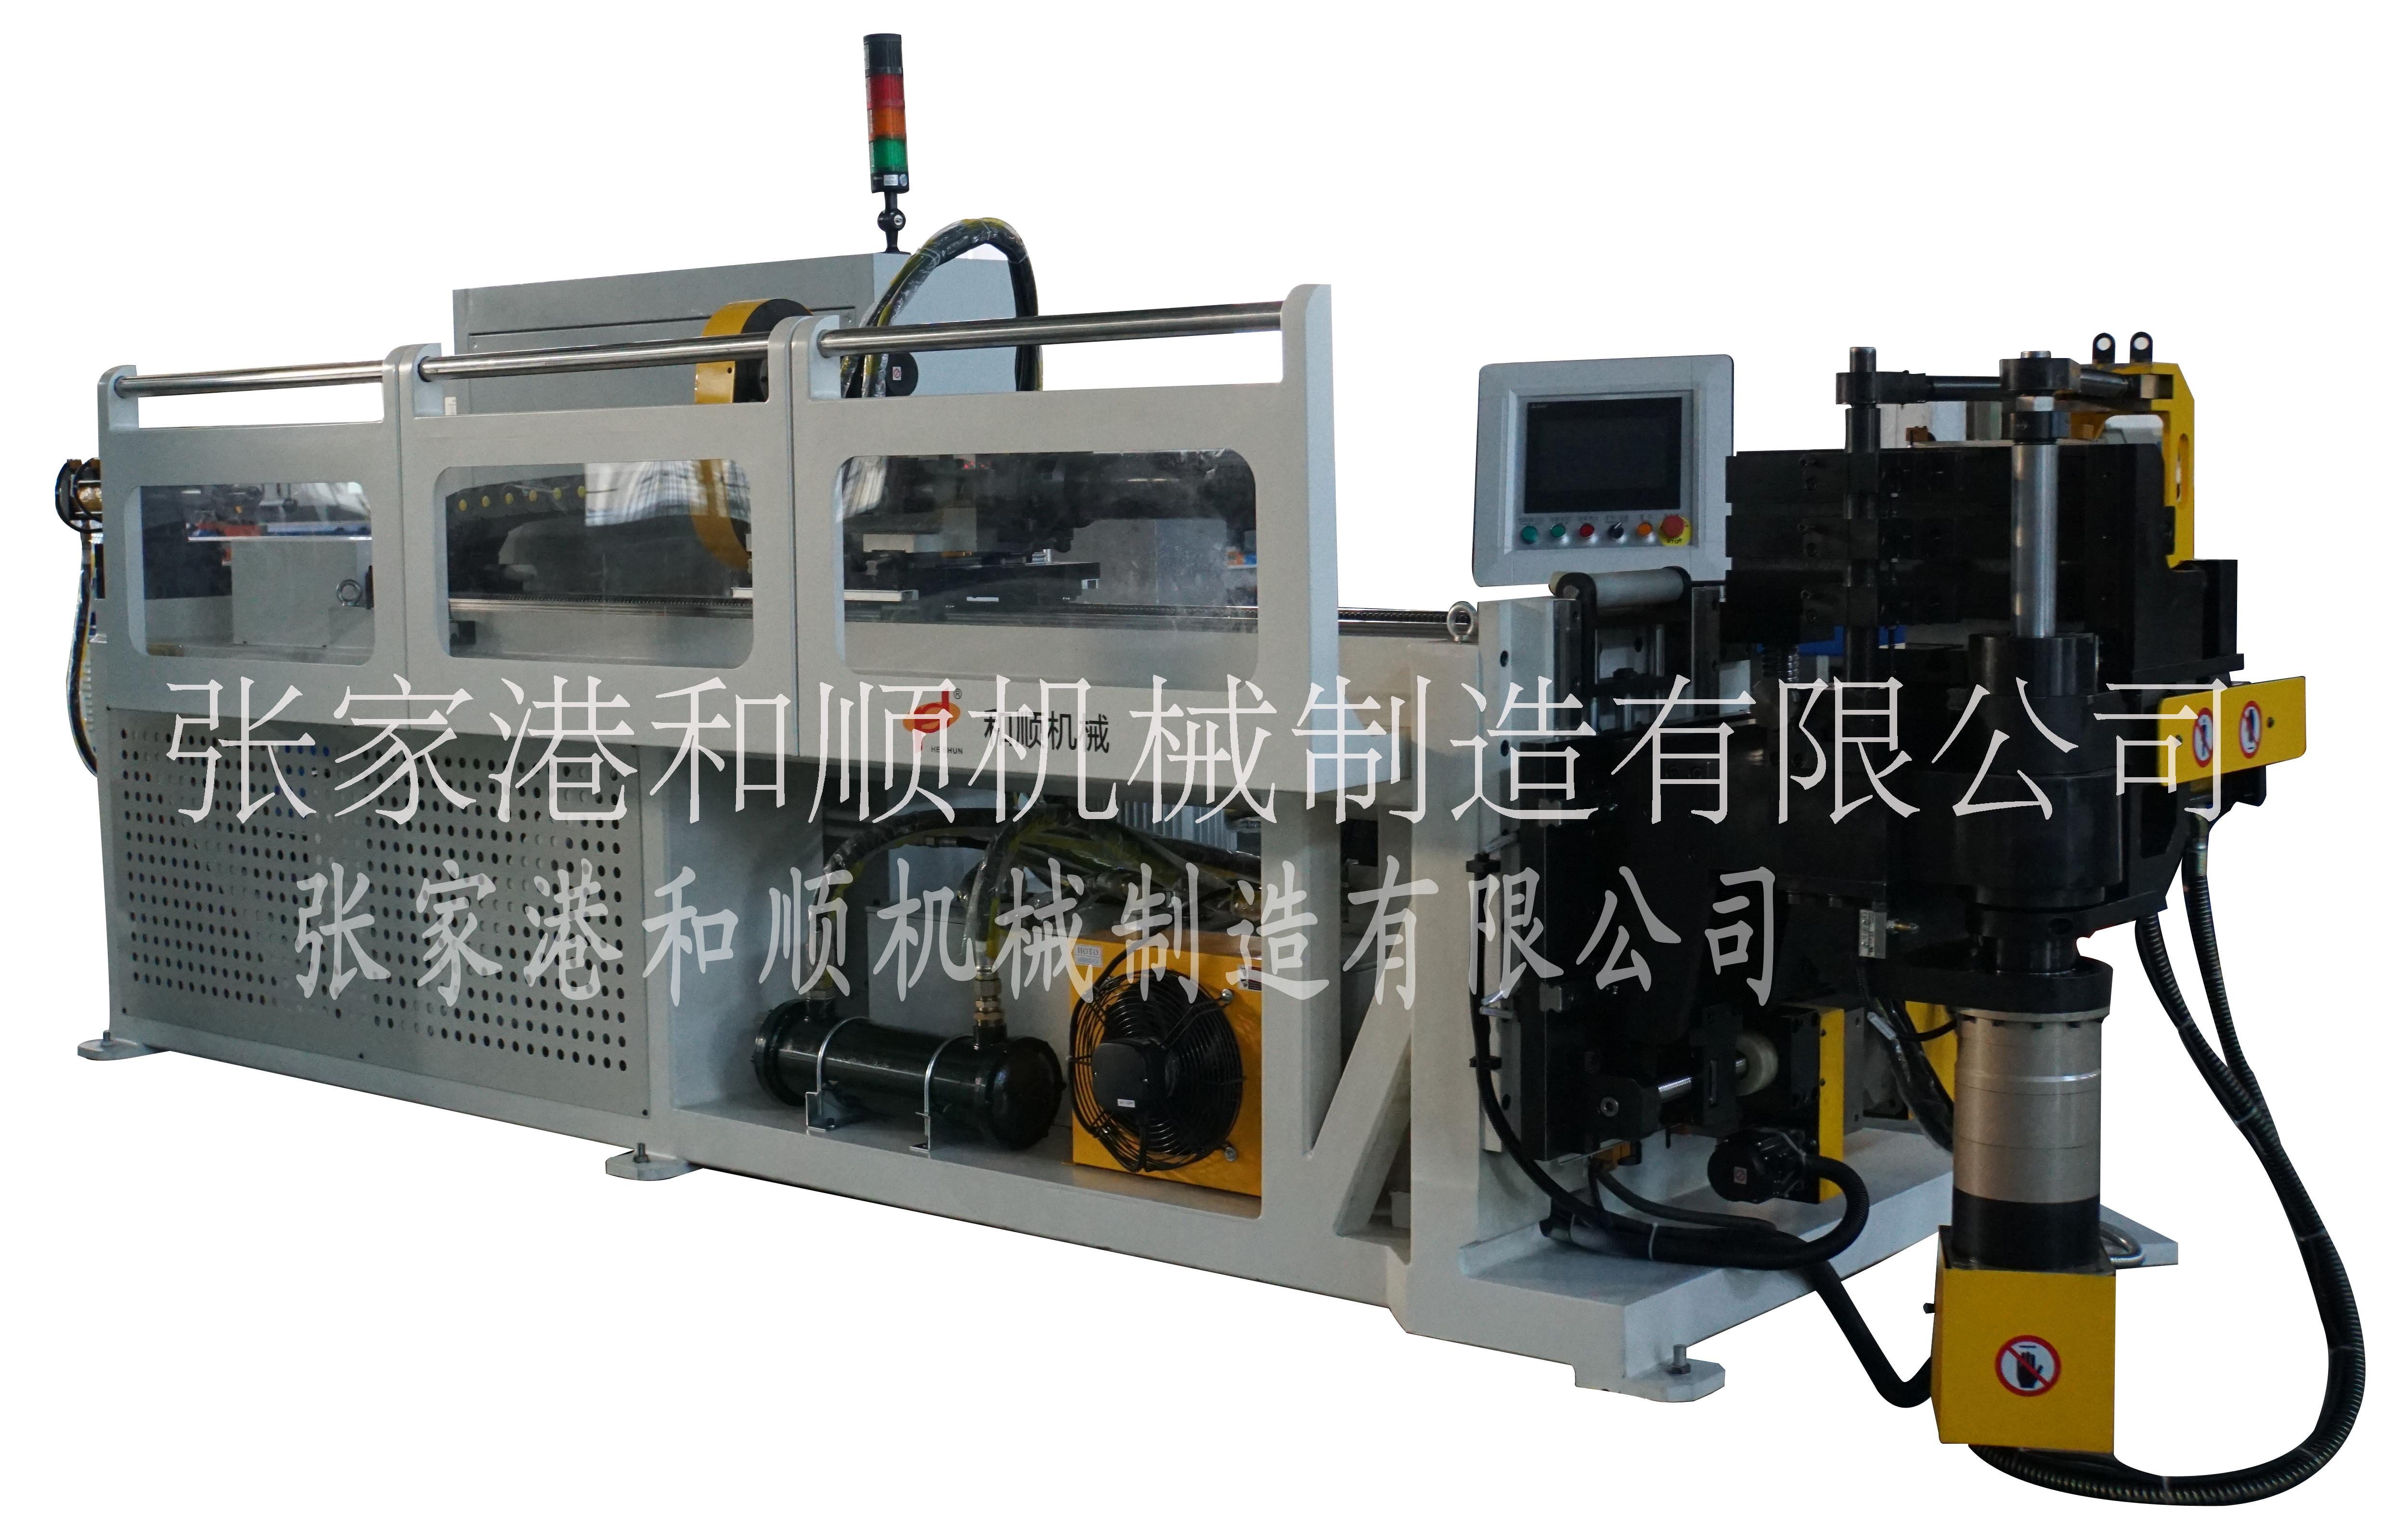 北京全自动弯管机生产线/ 全自动数控伺服弯管机